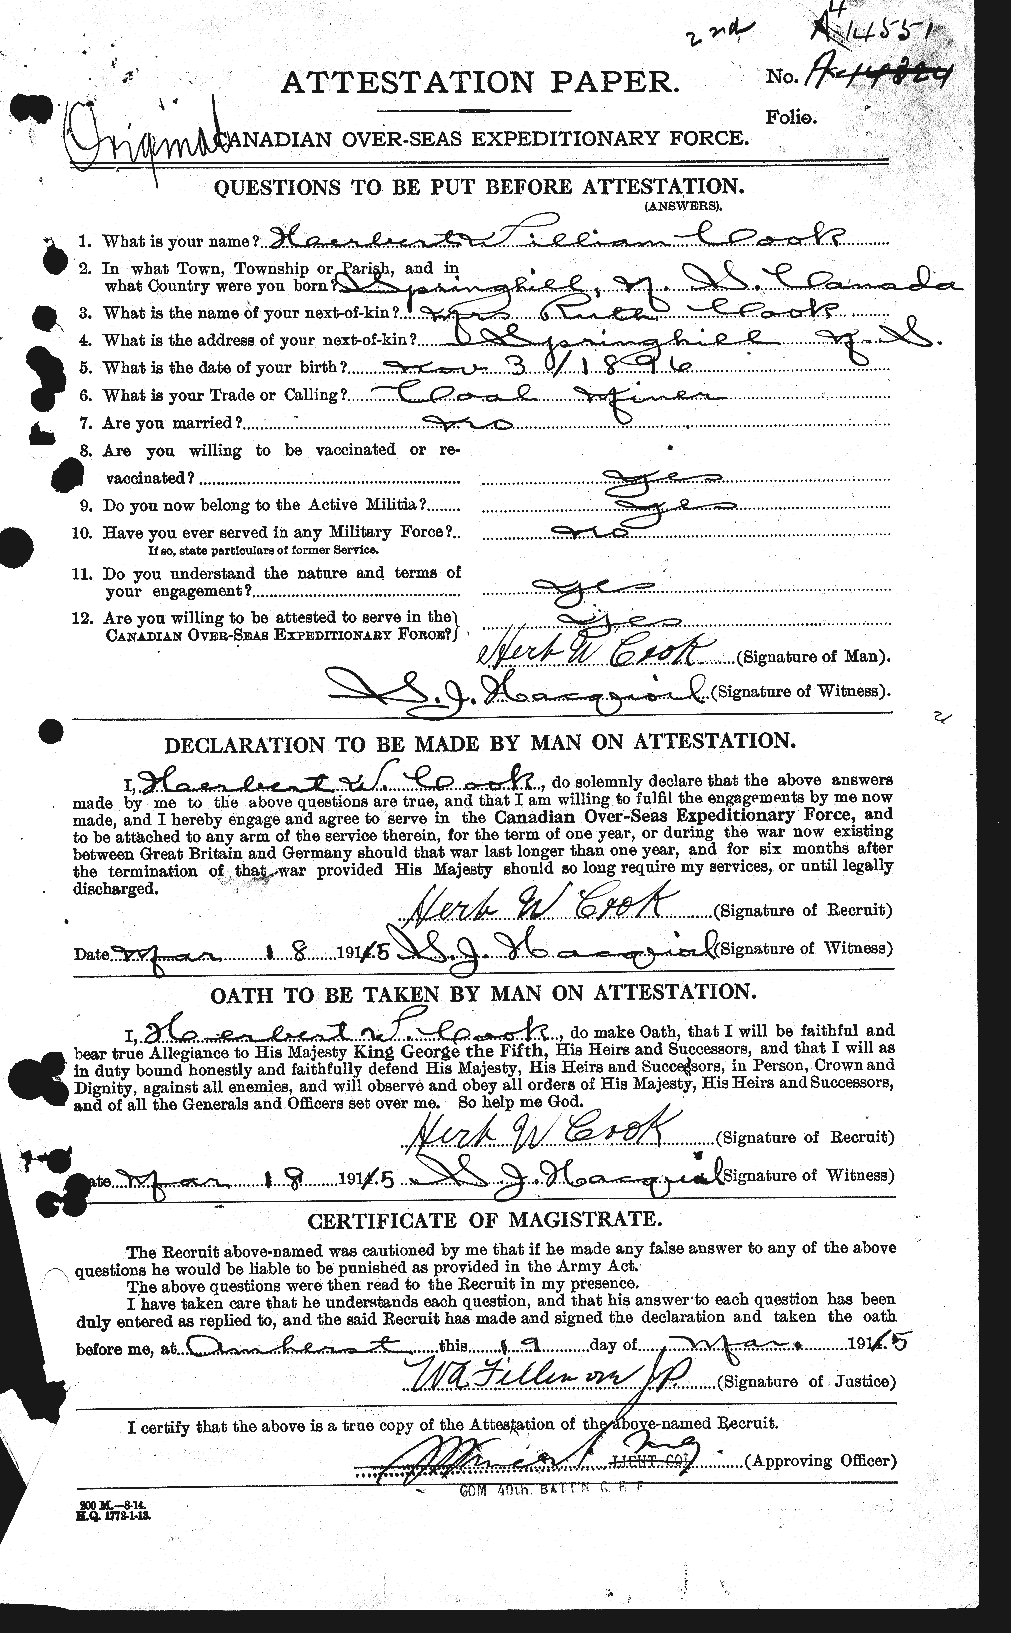 Dossiers du Personnel de la Première Guerre mondiale - CEC 073713a